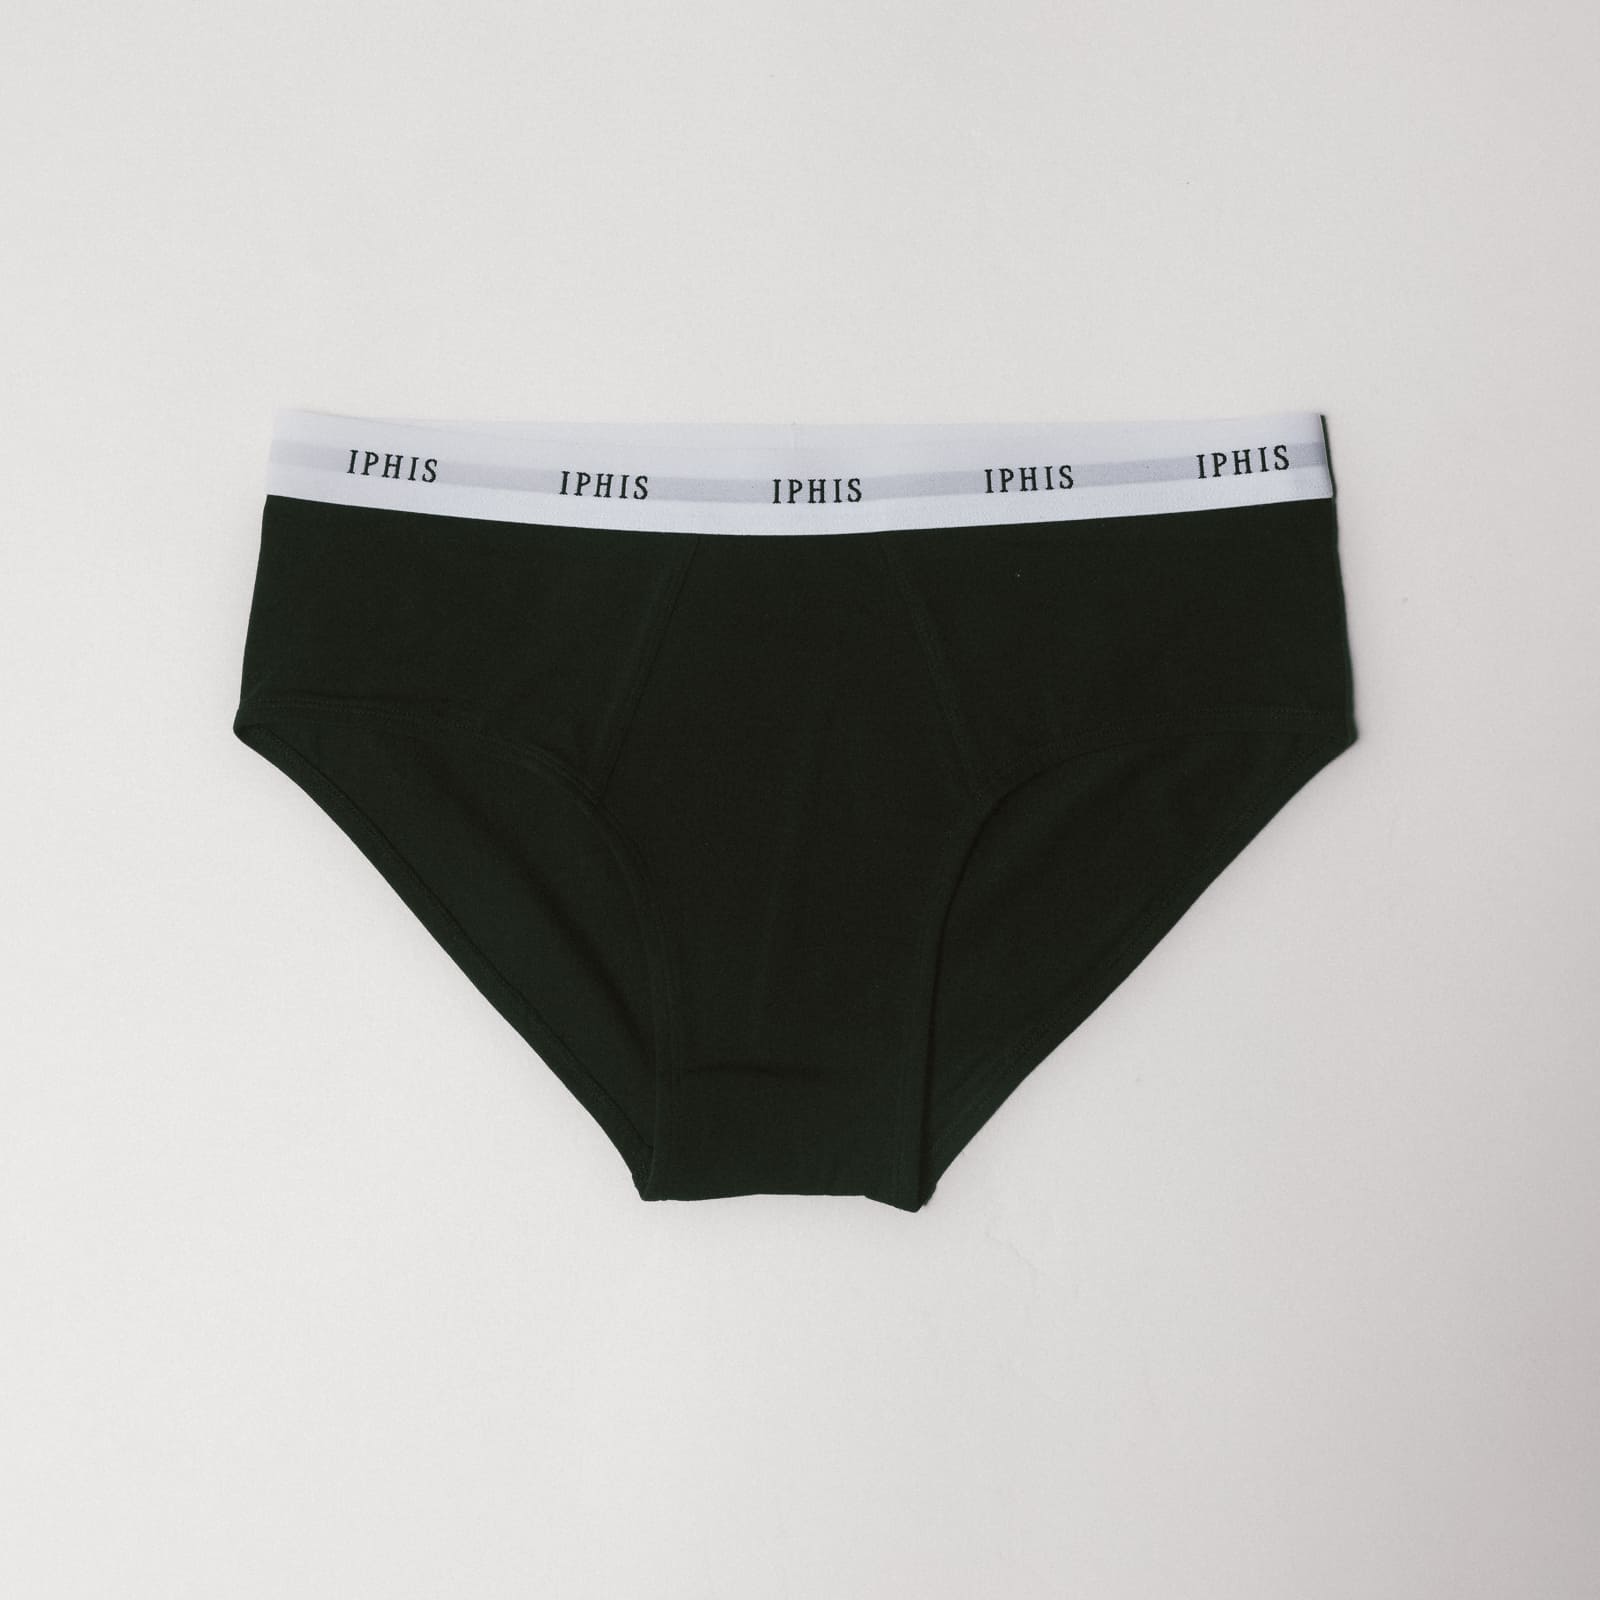 brief − 100% organic. classic cotton brief underwear